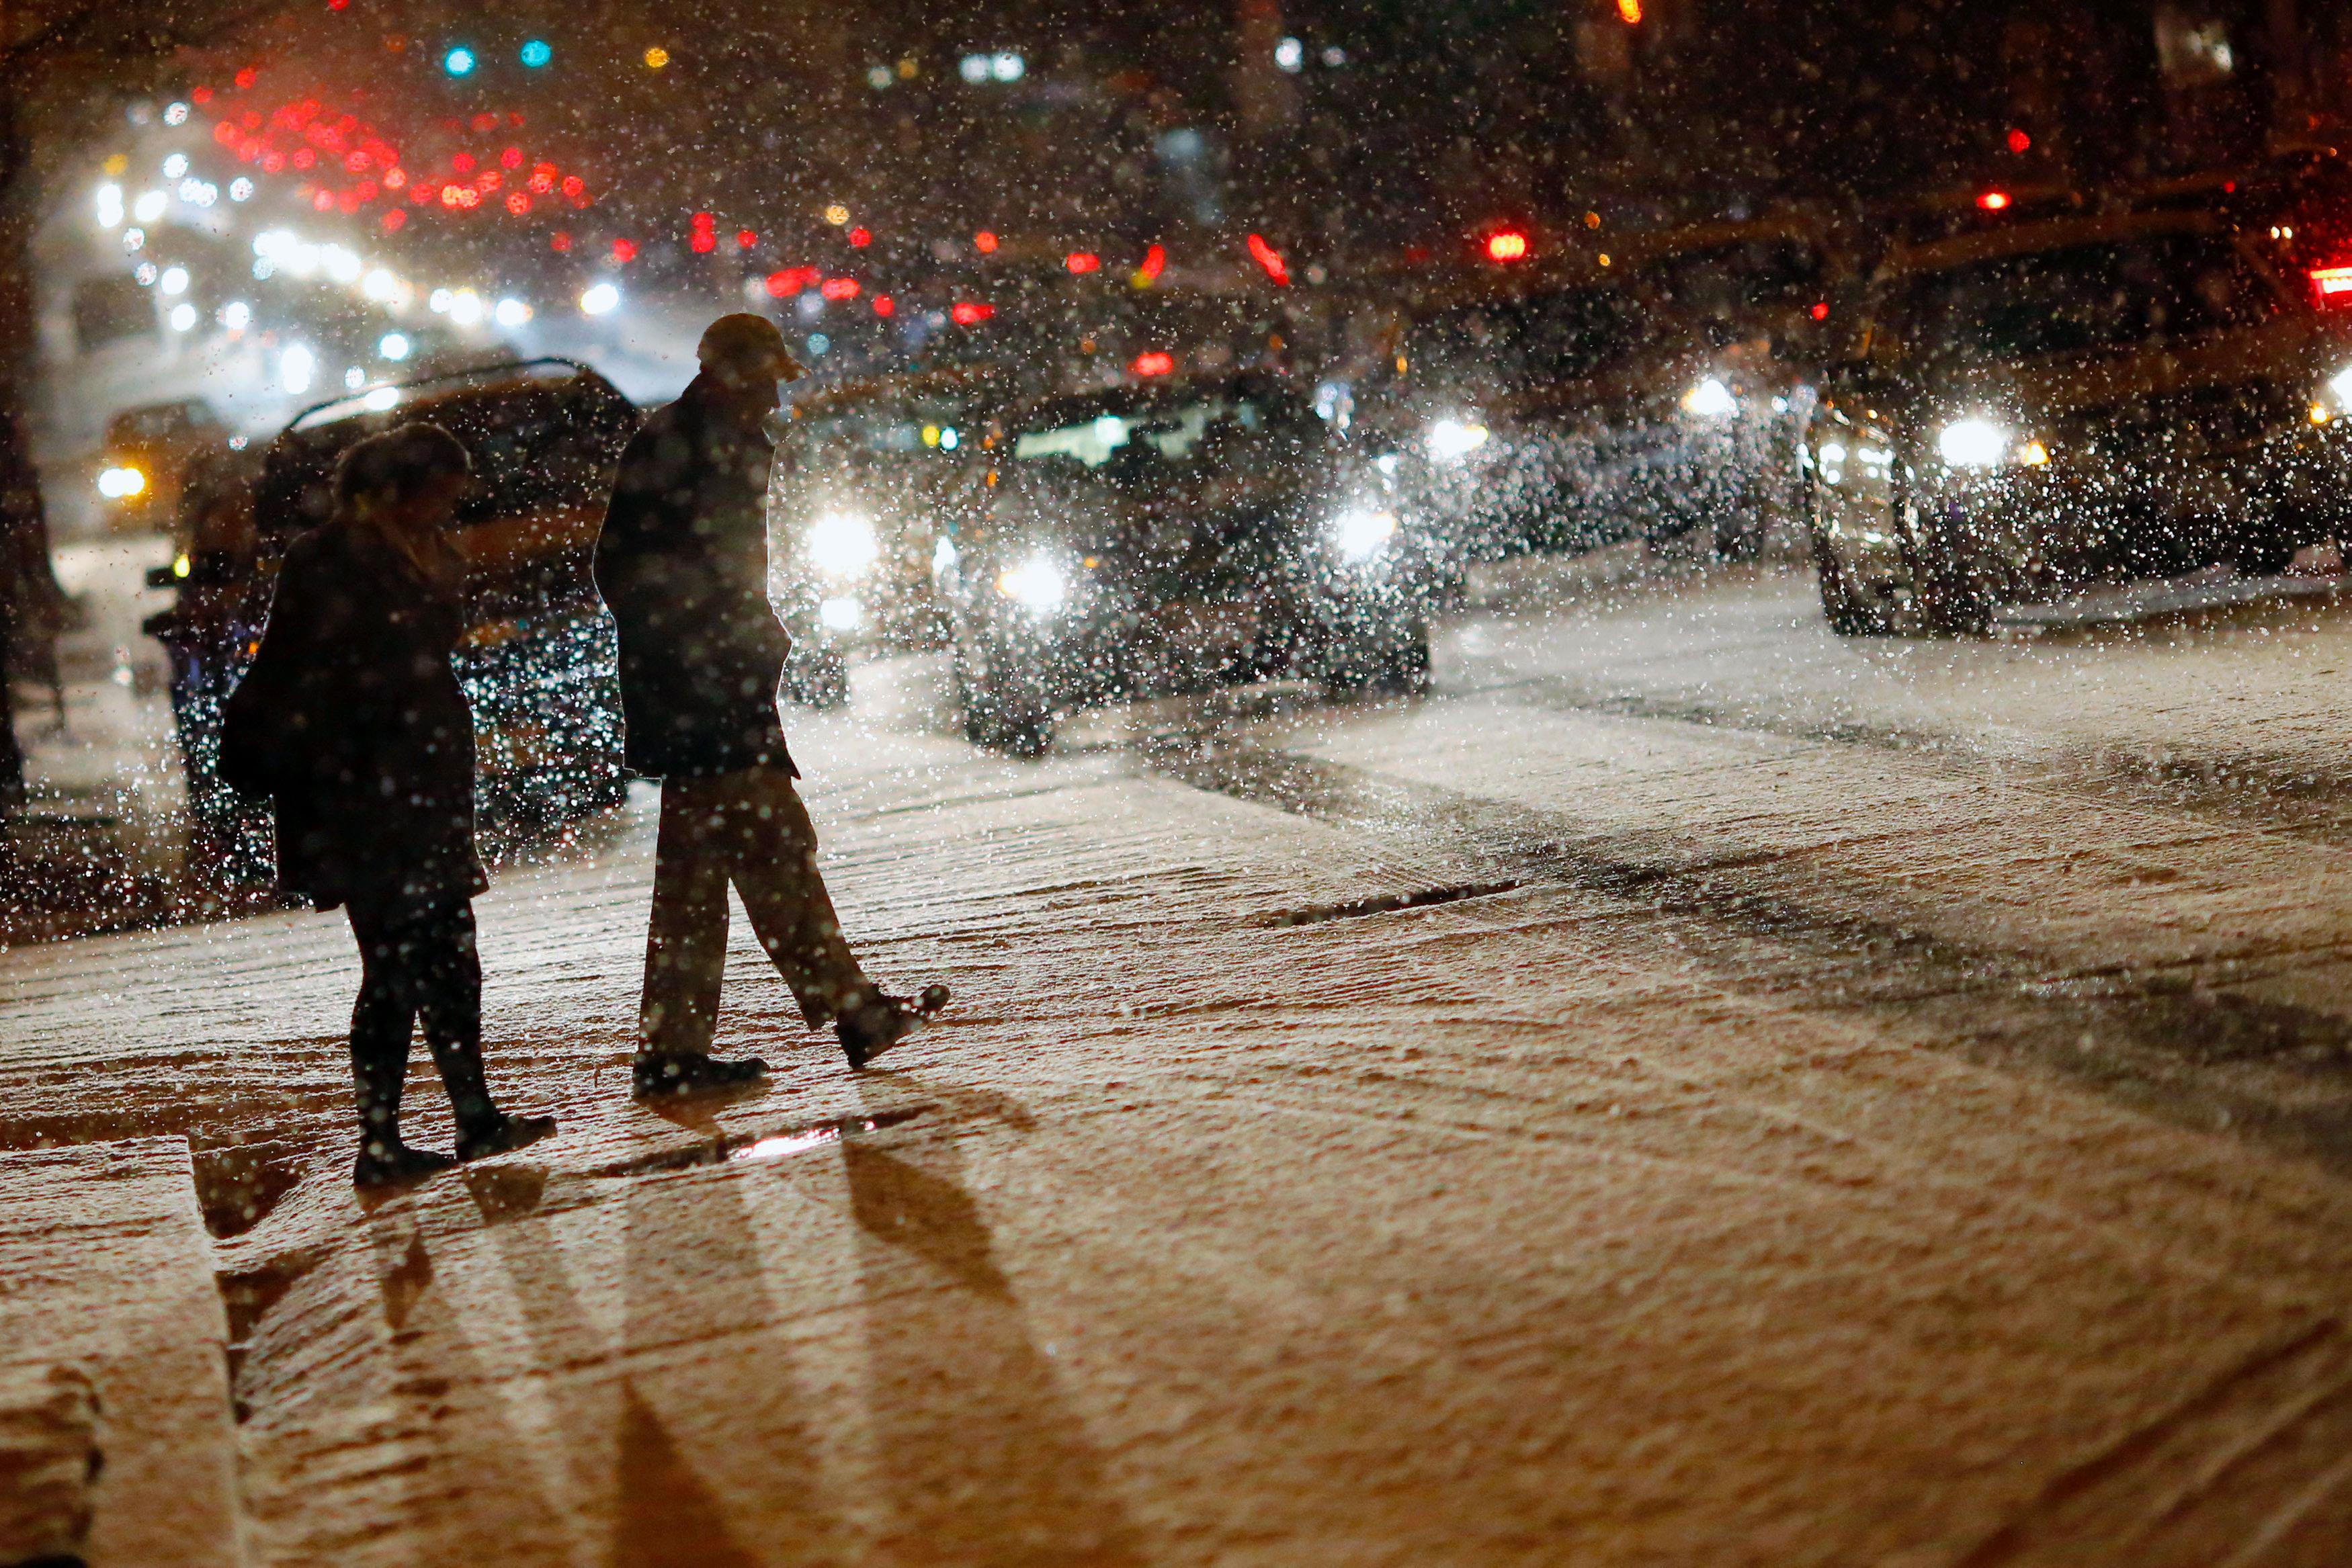 People cross a street as it snows in Washington